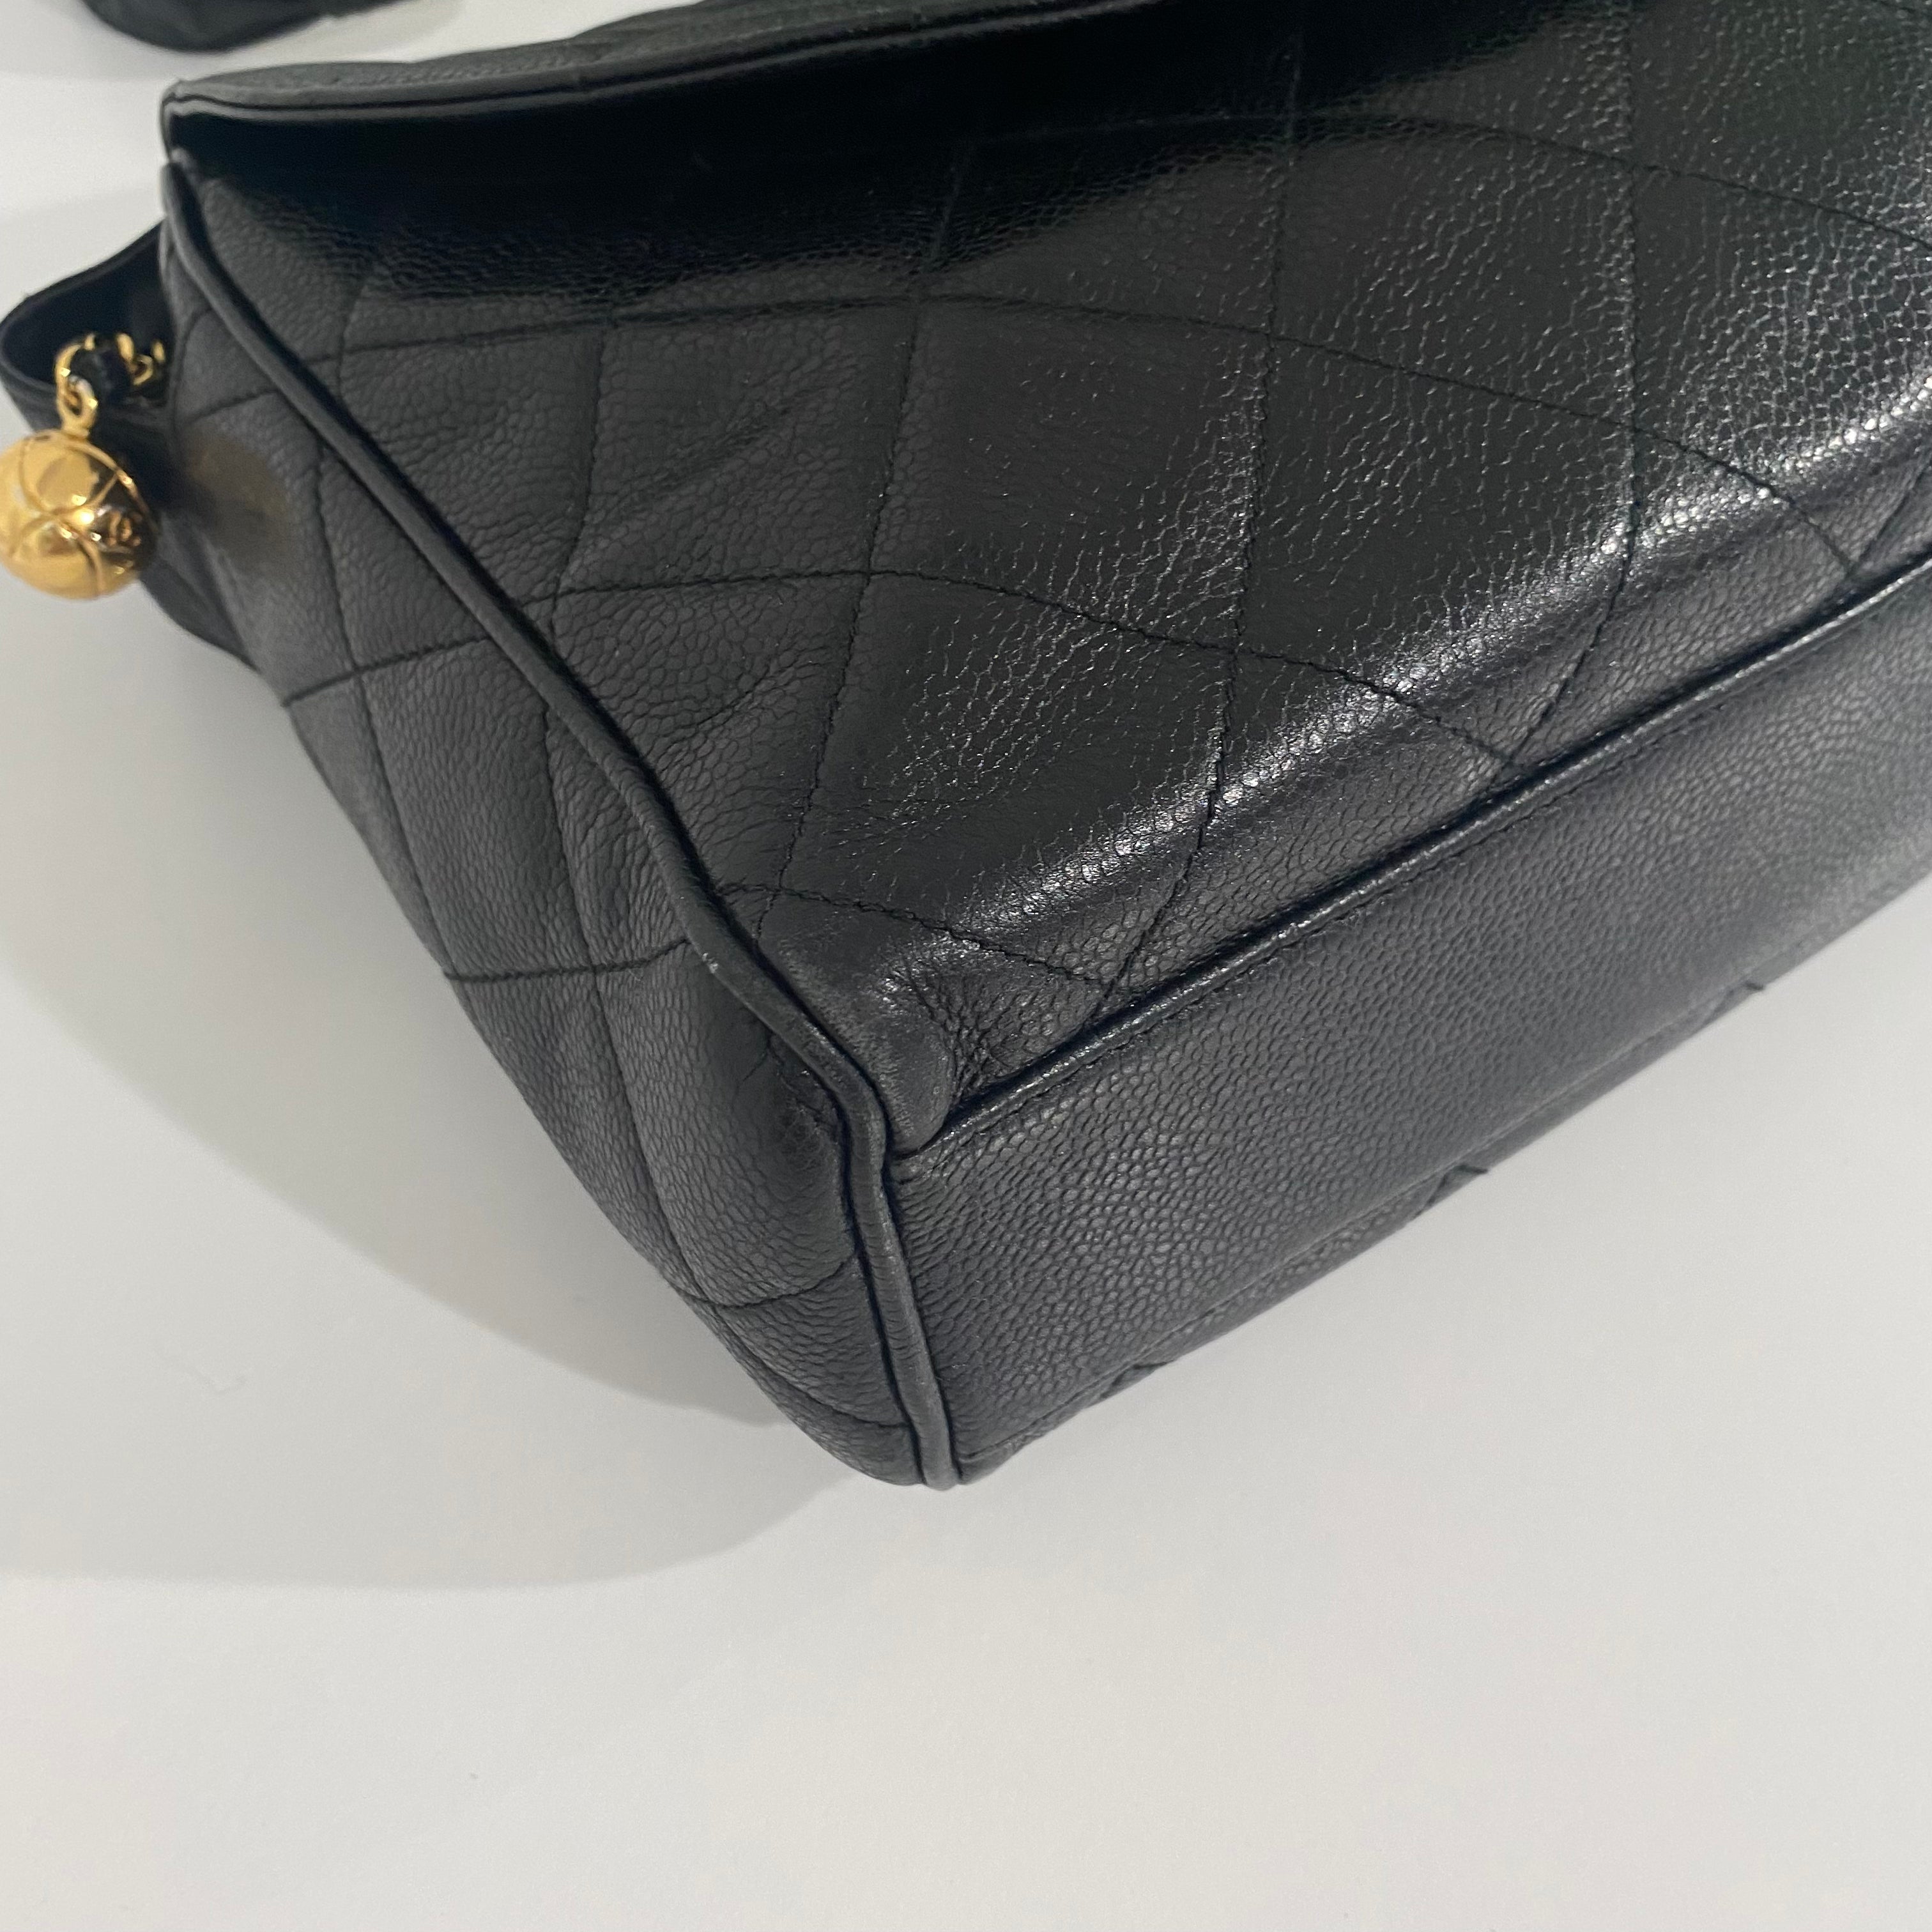 Chanel Vintage Black Camera Bag